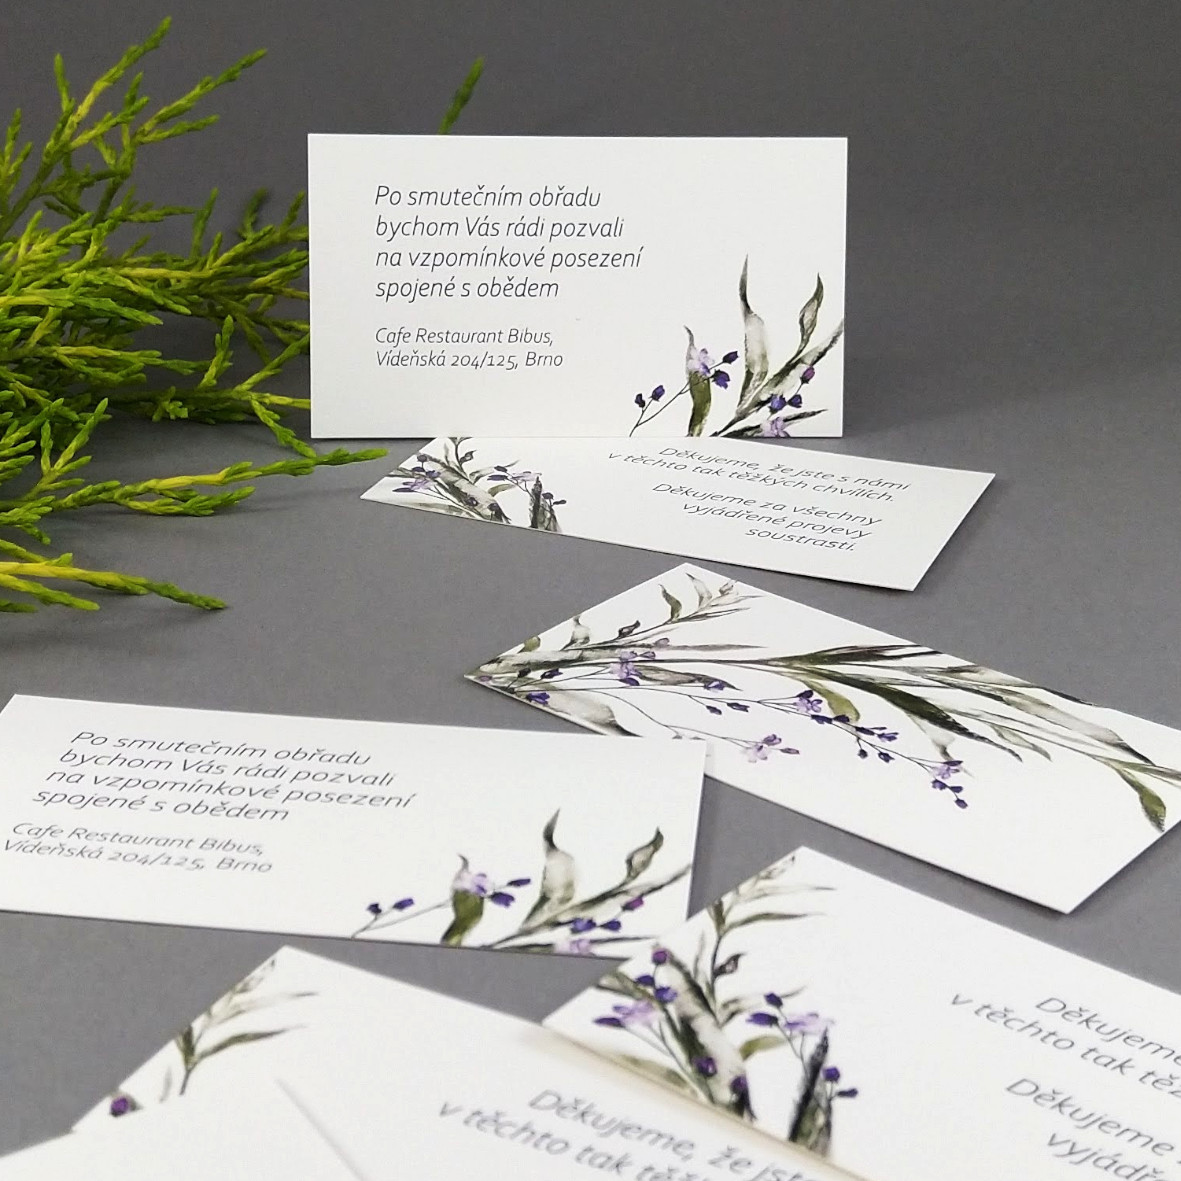 Pozvánka, informační karta – s motivem ratolesti a drobných fialových květů, formát 85 × 55 mm, oboustranná